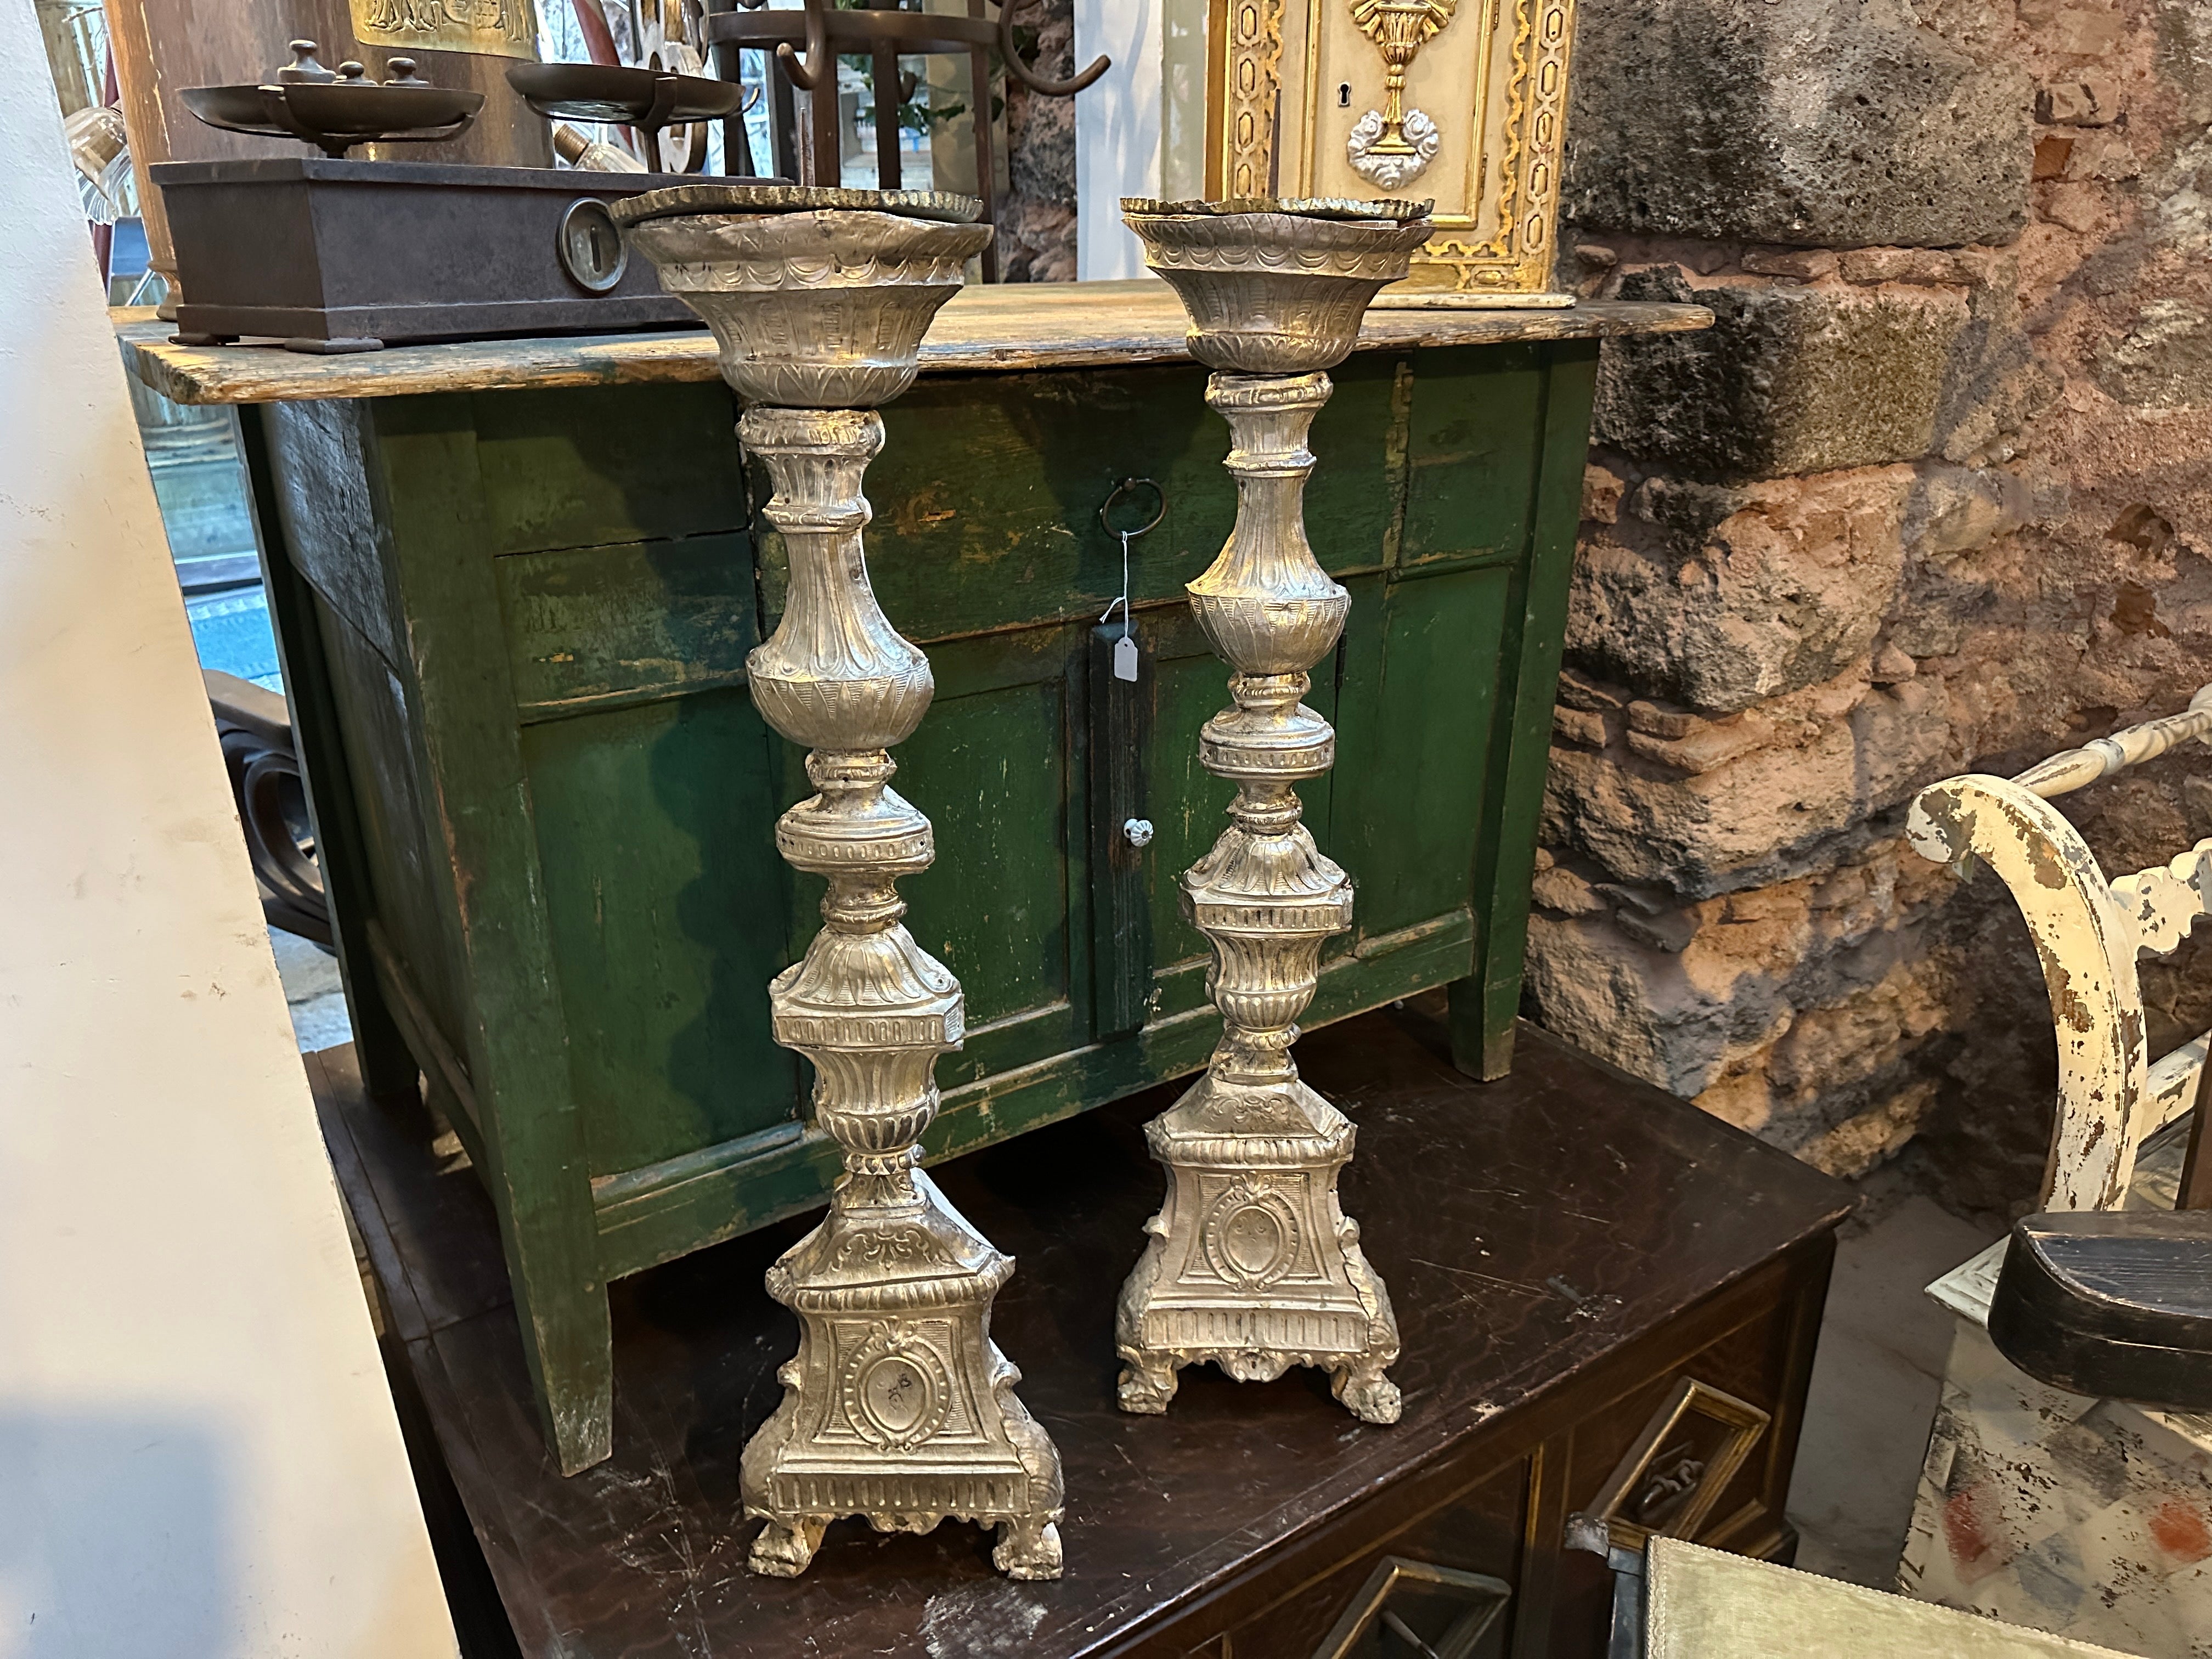 Ein Paar Louis XVI sizilianische Fackeln aus dem 18. Jahrhundert im Originalzustand, nie restauriert, mit deutlichen Gebrauchs- und Altersspuren, die wahrscheinlich in einer privaten Kirche oder Kapelle verwendet wurden. Die Fackeln wurden bei